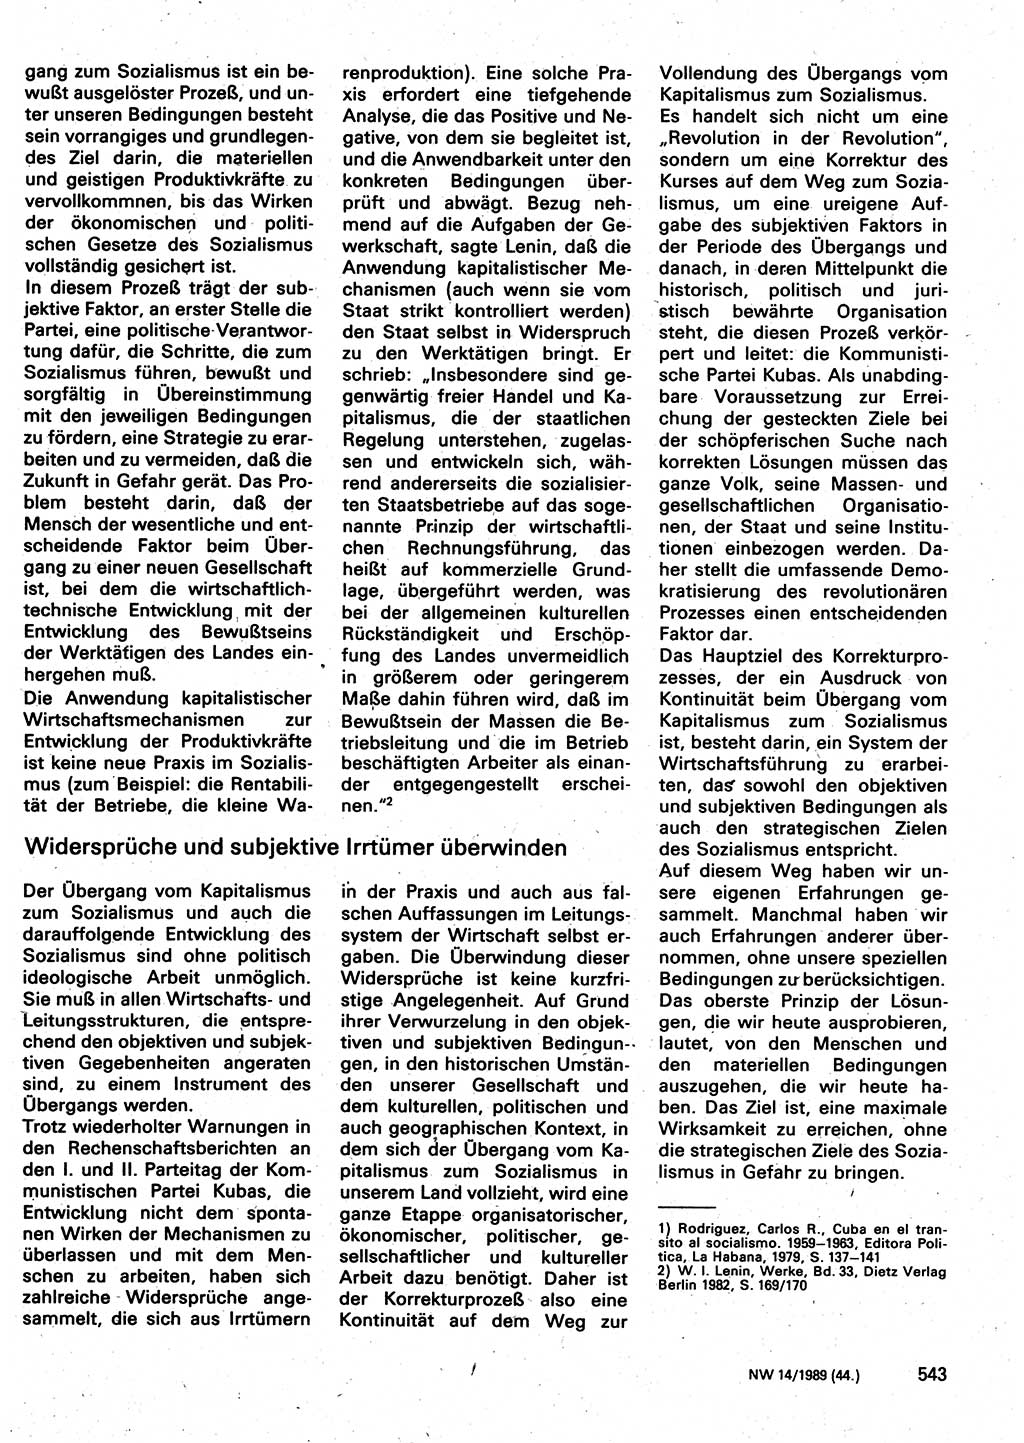 Neuer Weg (NW), Organ des Zentralkomitees (ZK) der SED (Sozialistische Einheitspartei Deutschlands) für Fragen des Parteilebens, 44. Jahrgang [Deutsche Demokratische Republik (DDR)] 1989, Seite 543 (NW ZK SED DDR 1989, S. 543)